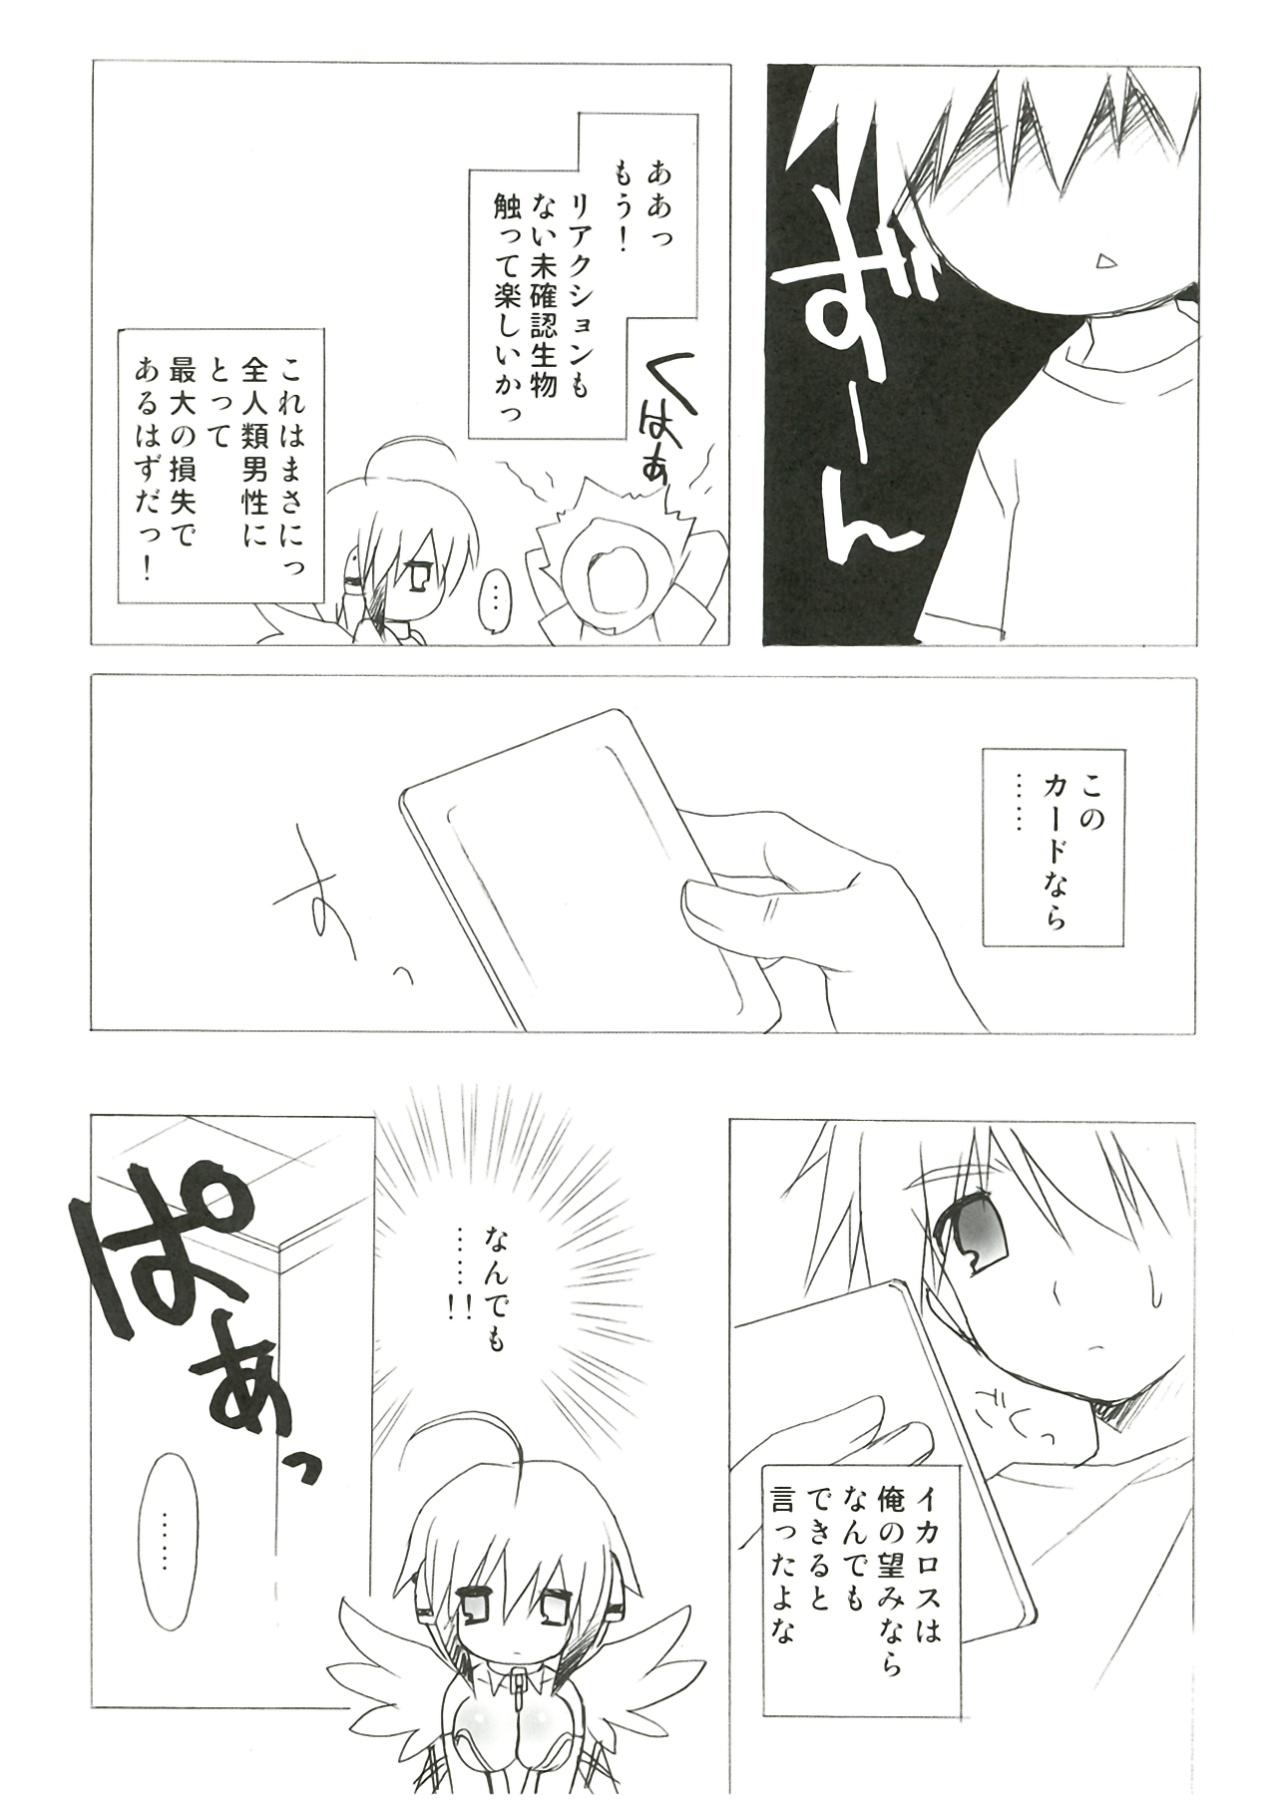 Gaystraight Kokoro no Otoshimono - Sora no otoshimono Stretching - Page 10